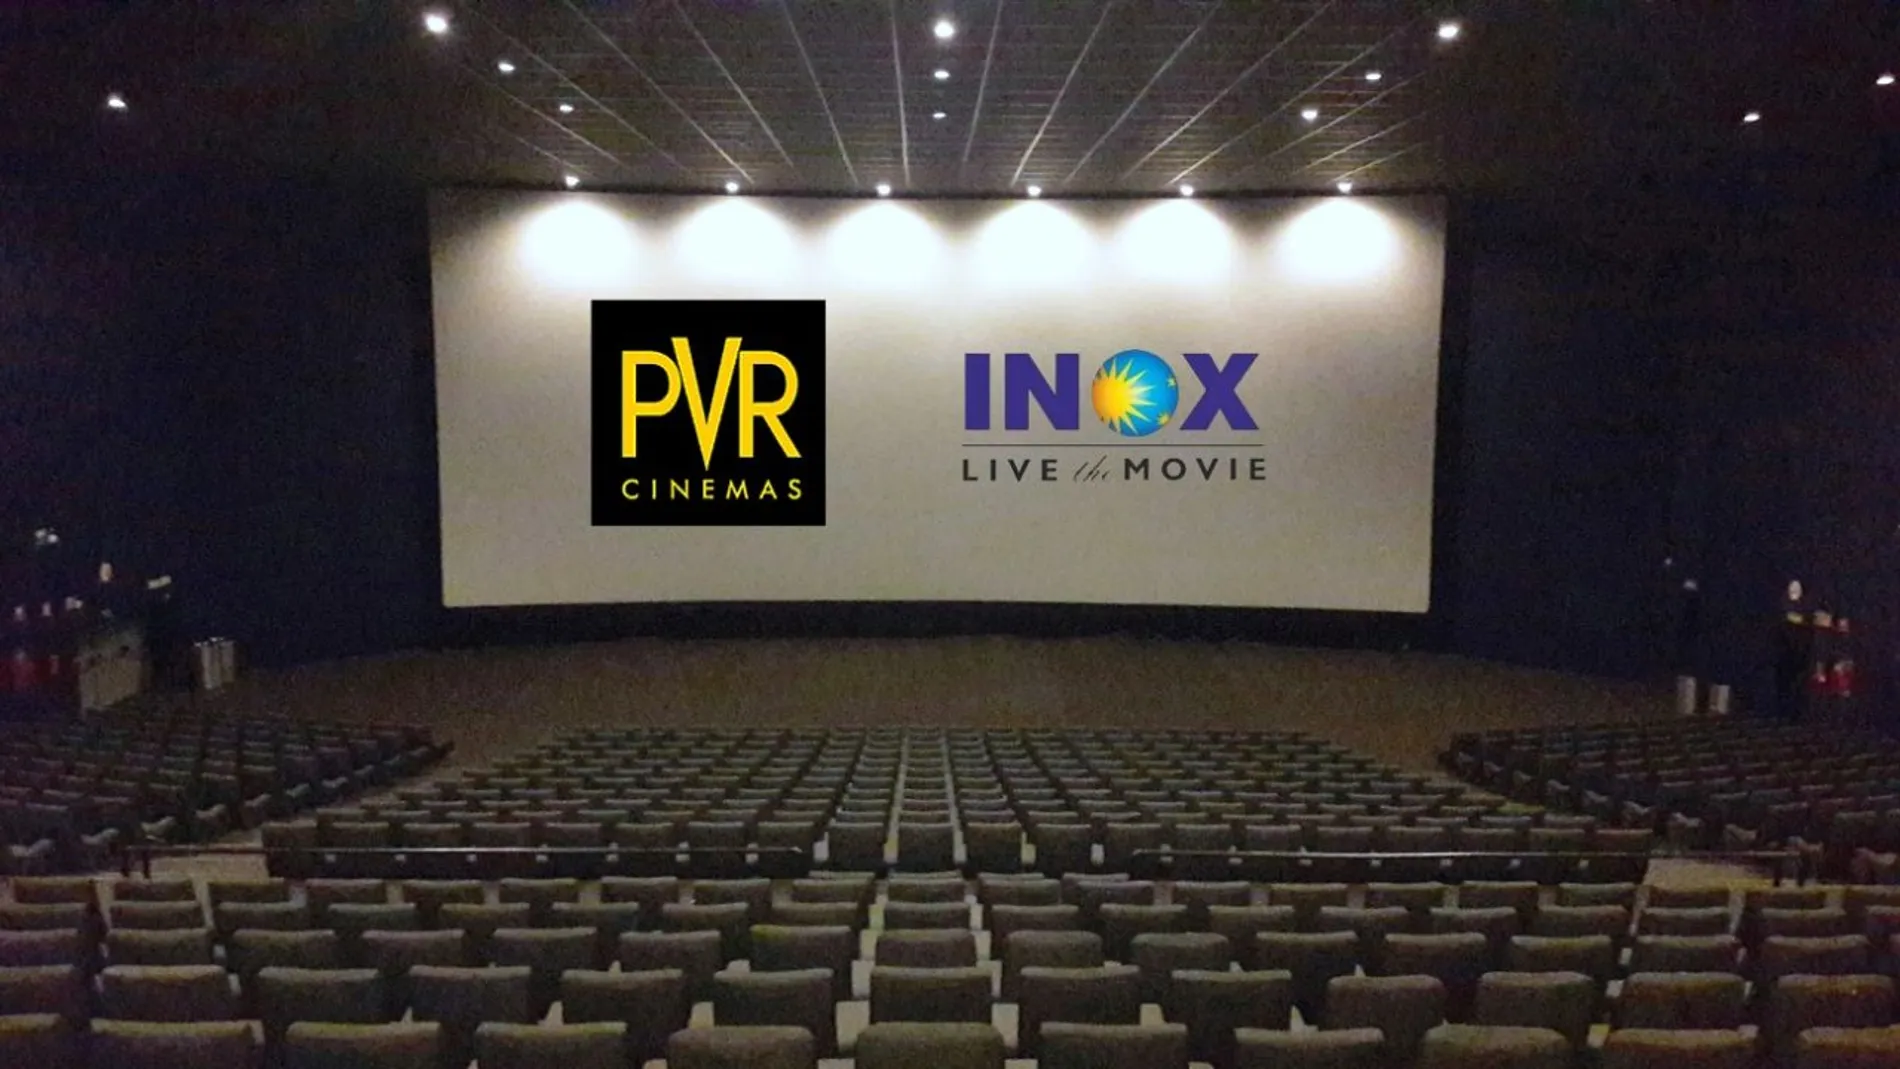 PVR INOX ने एक ही दिन में कुल 15 स्क्रीन वाले 2 सिनेमाघर खोलकर उत्तर और मध्य भारत में अपना किया विस्तार 